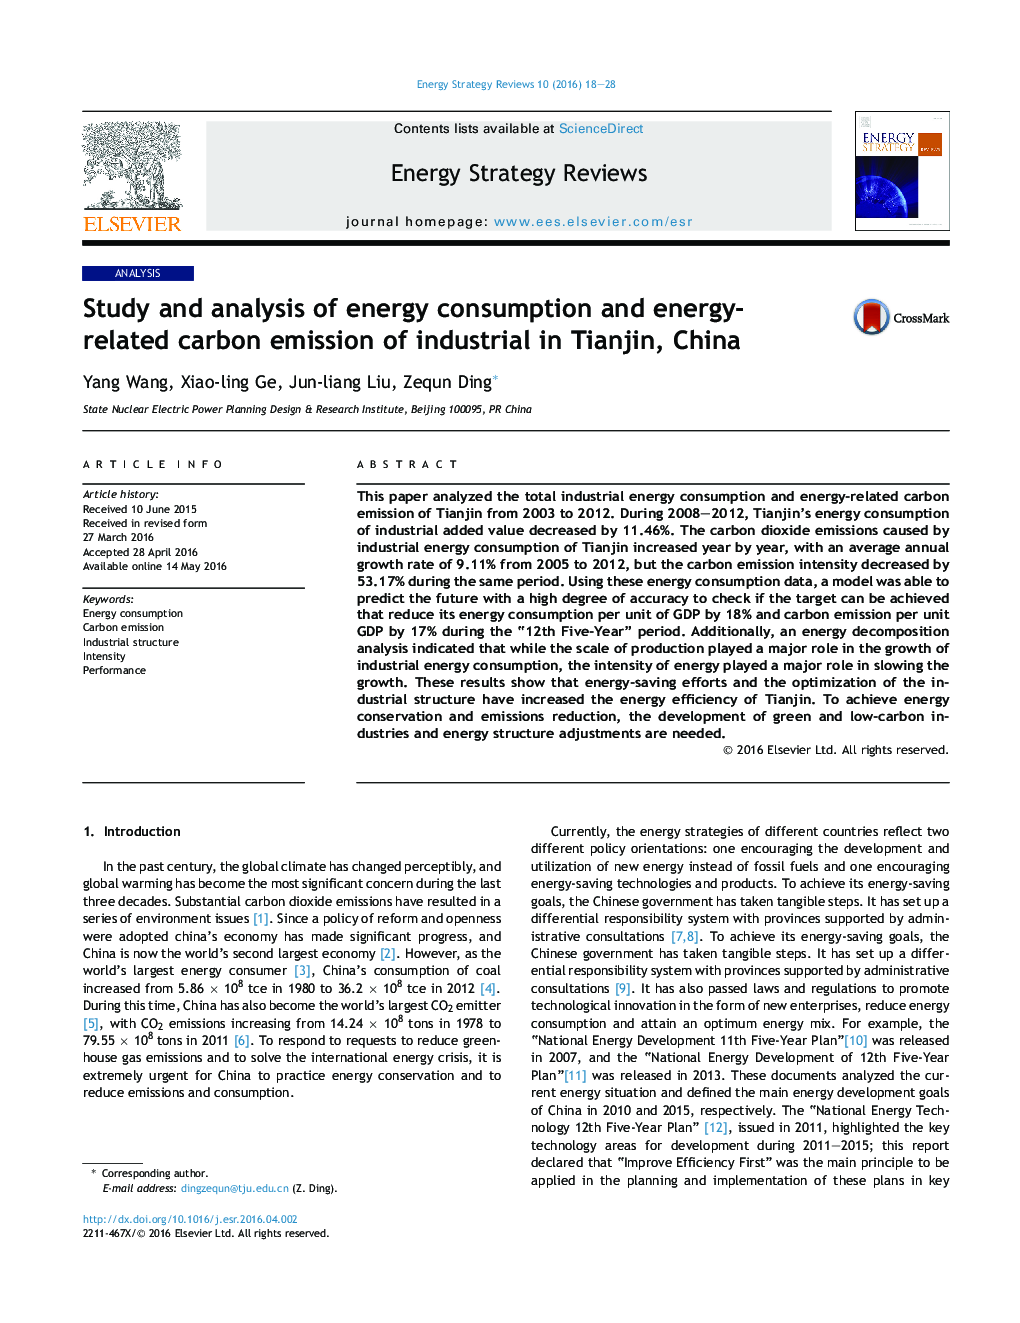 مطالعه و تجزیه و تحلیل مصرف انرژی و انتشار کربن صنعتی مربتط با انرژی در تیانجین، چین